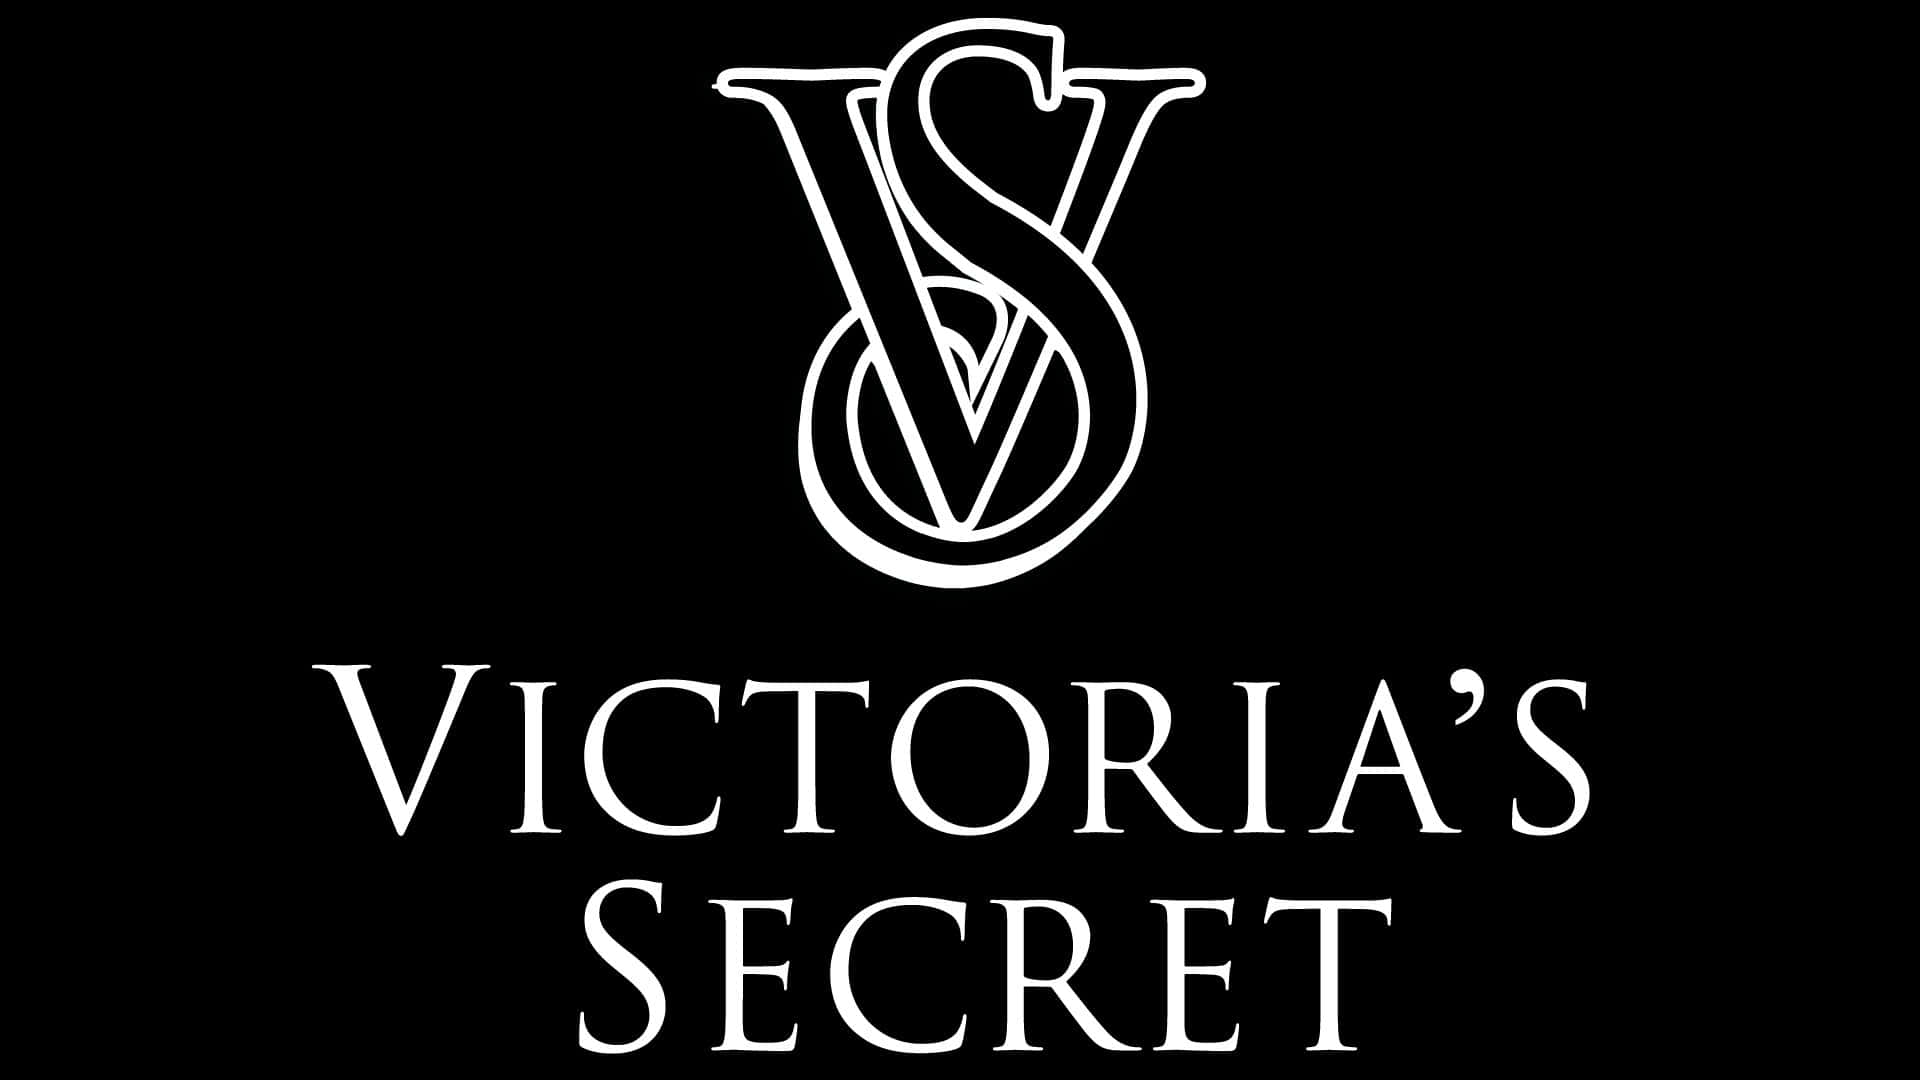 Captivating Victoria's Secret Angels